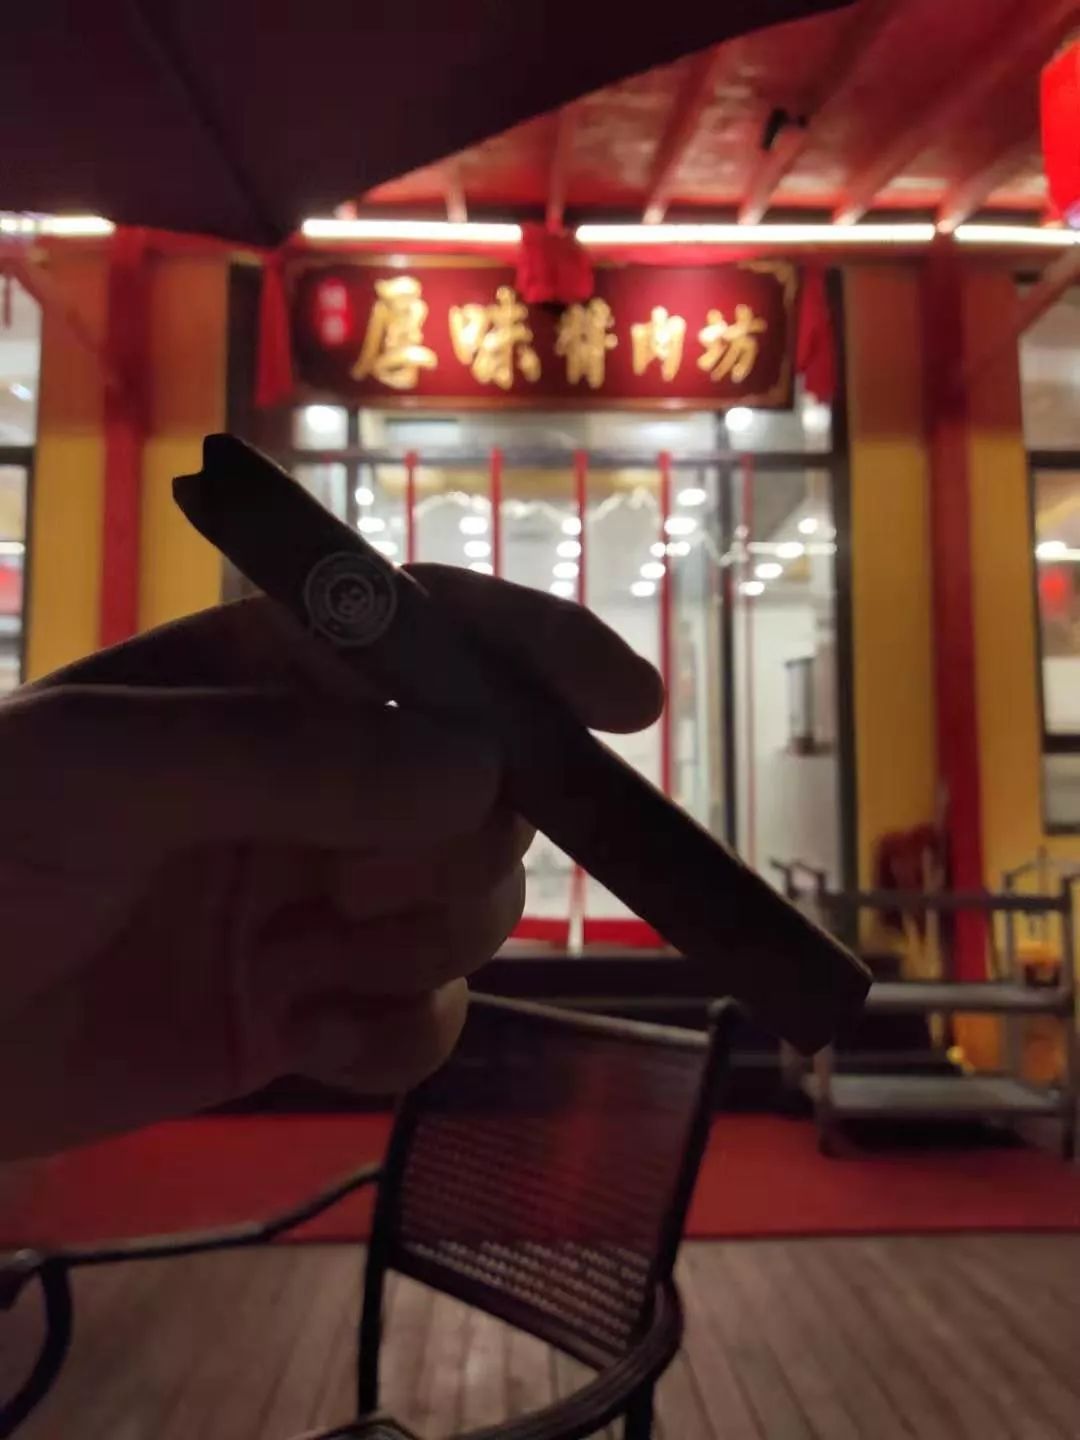 中国雪茄技能挑战赛高手云集 参赛人员提前磨砺誓展雄风